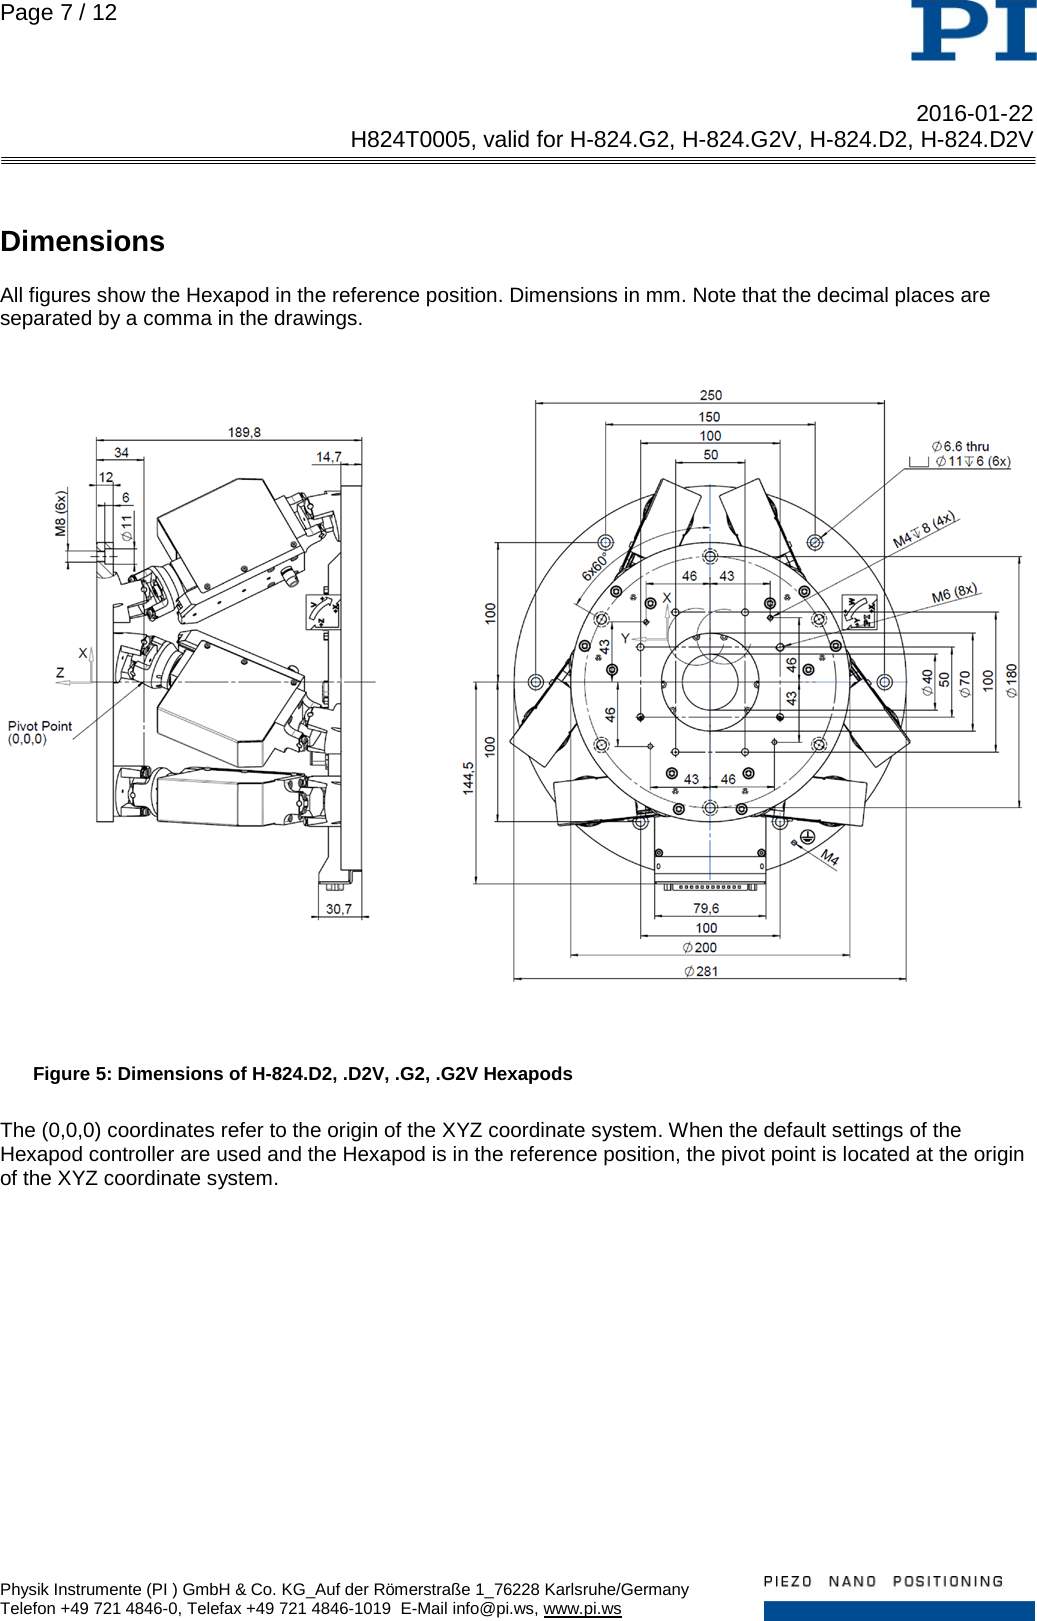 Page 7 of 12 - Physik Instrumente .  H824T0005 TN H-824 D2 G2 D2V G2V